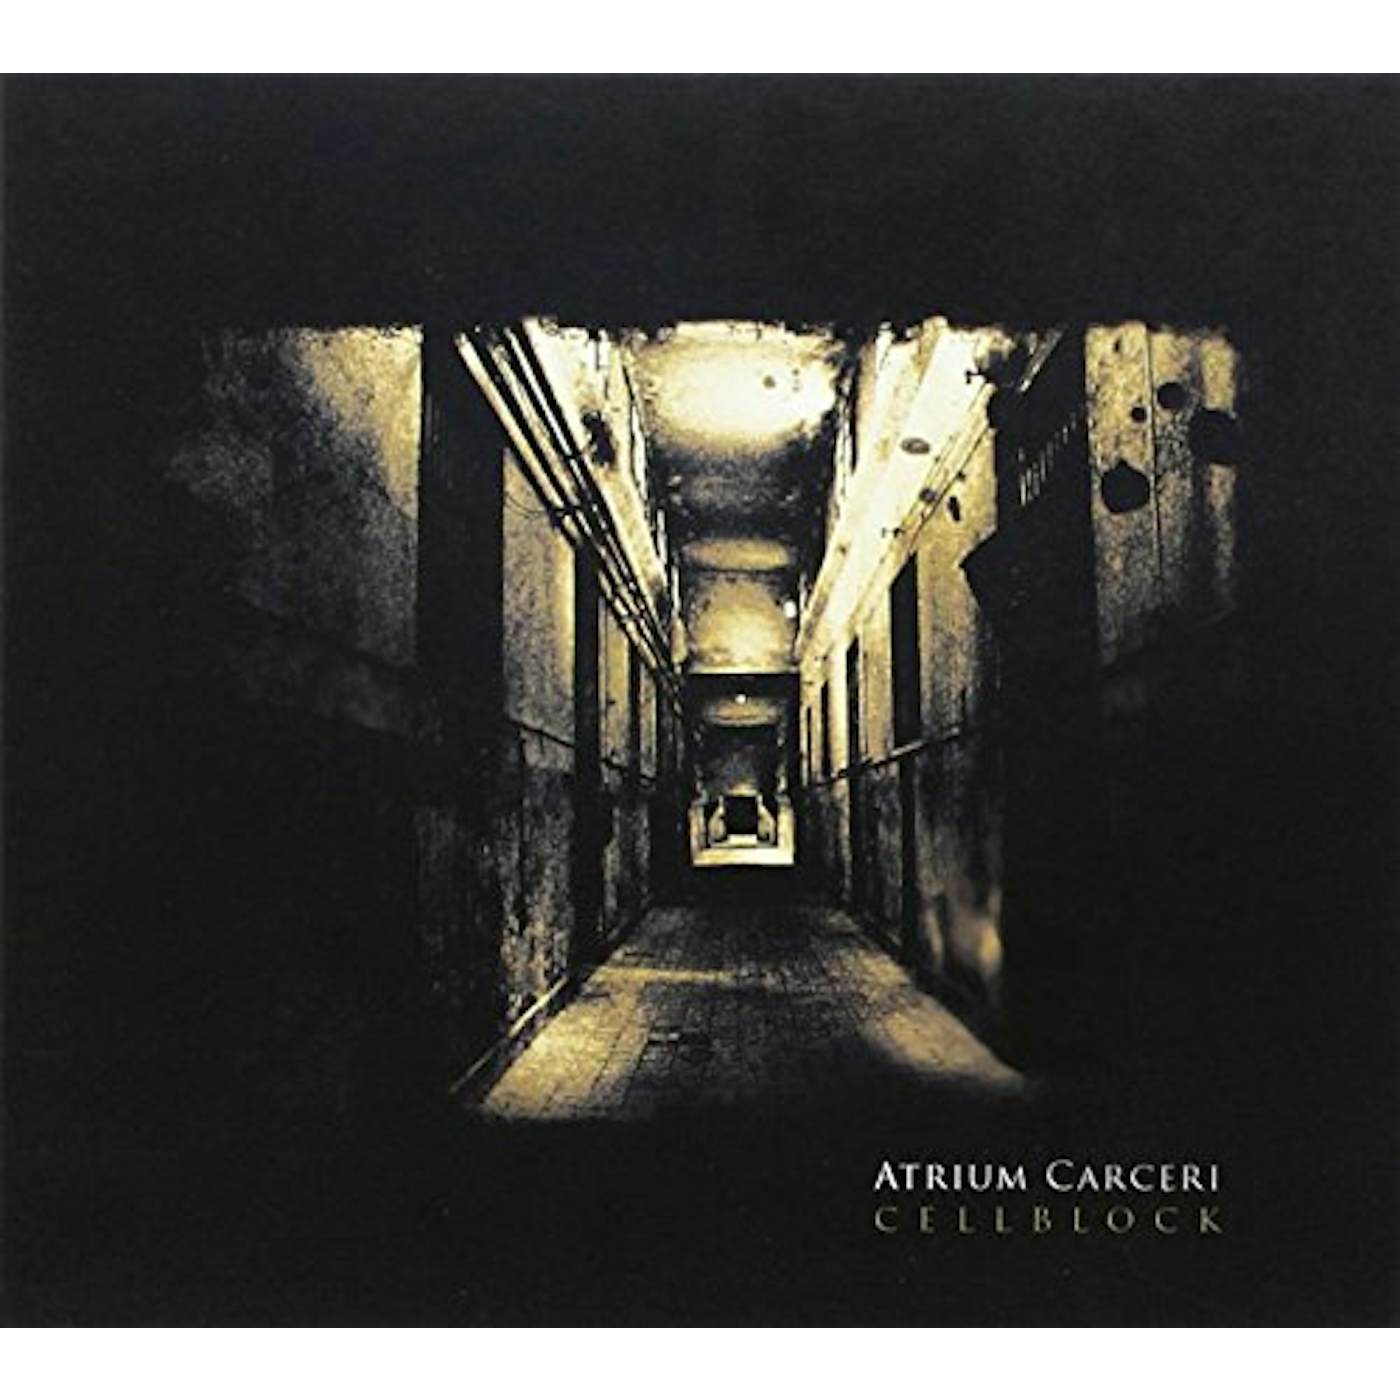 Atrium Carceri CELLBLOCK CD